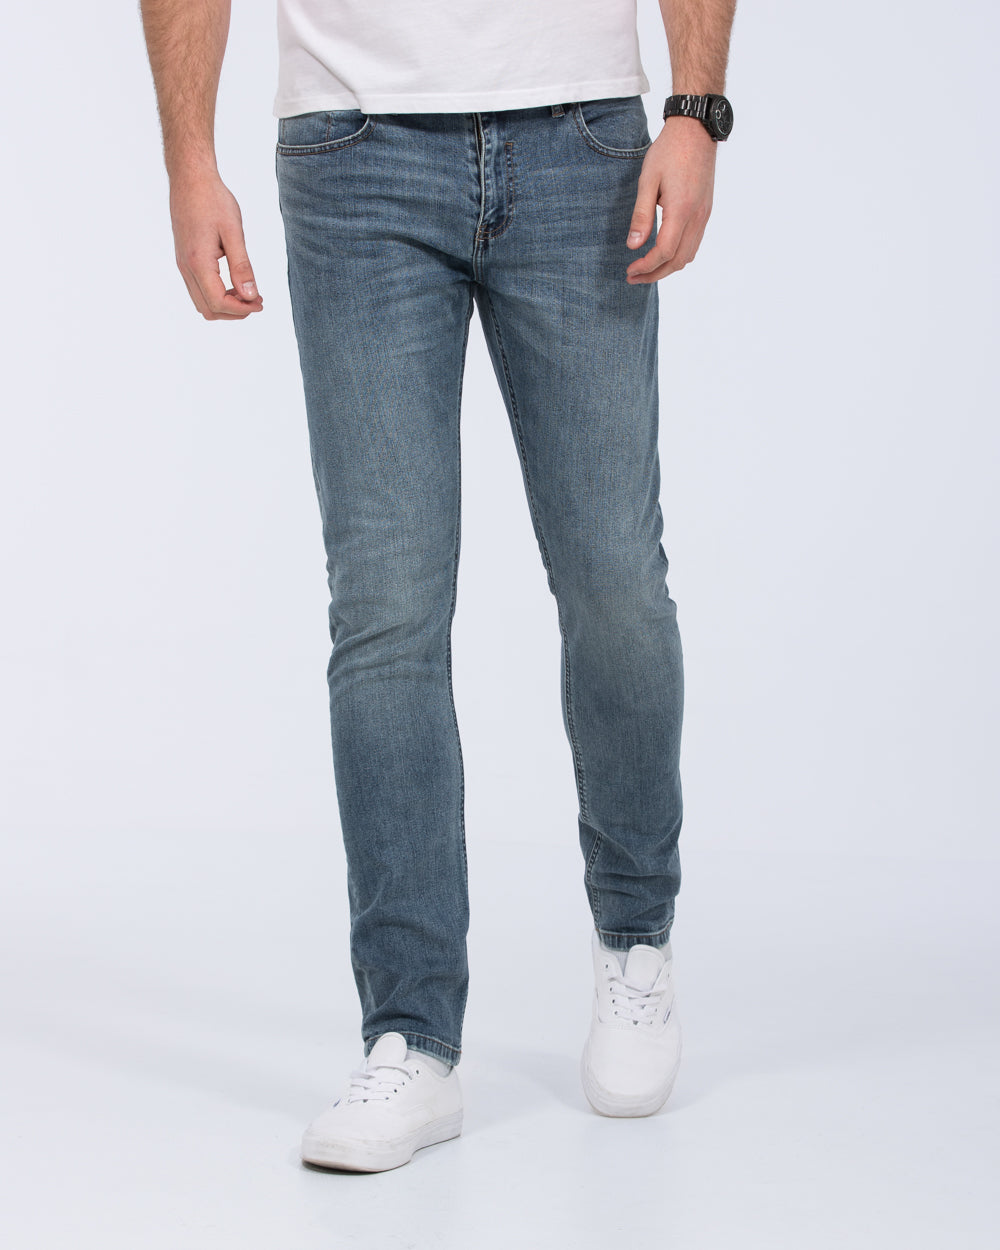 Mish Mash Sentinal Tall Jeans (light wash)